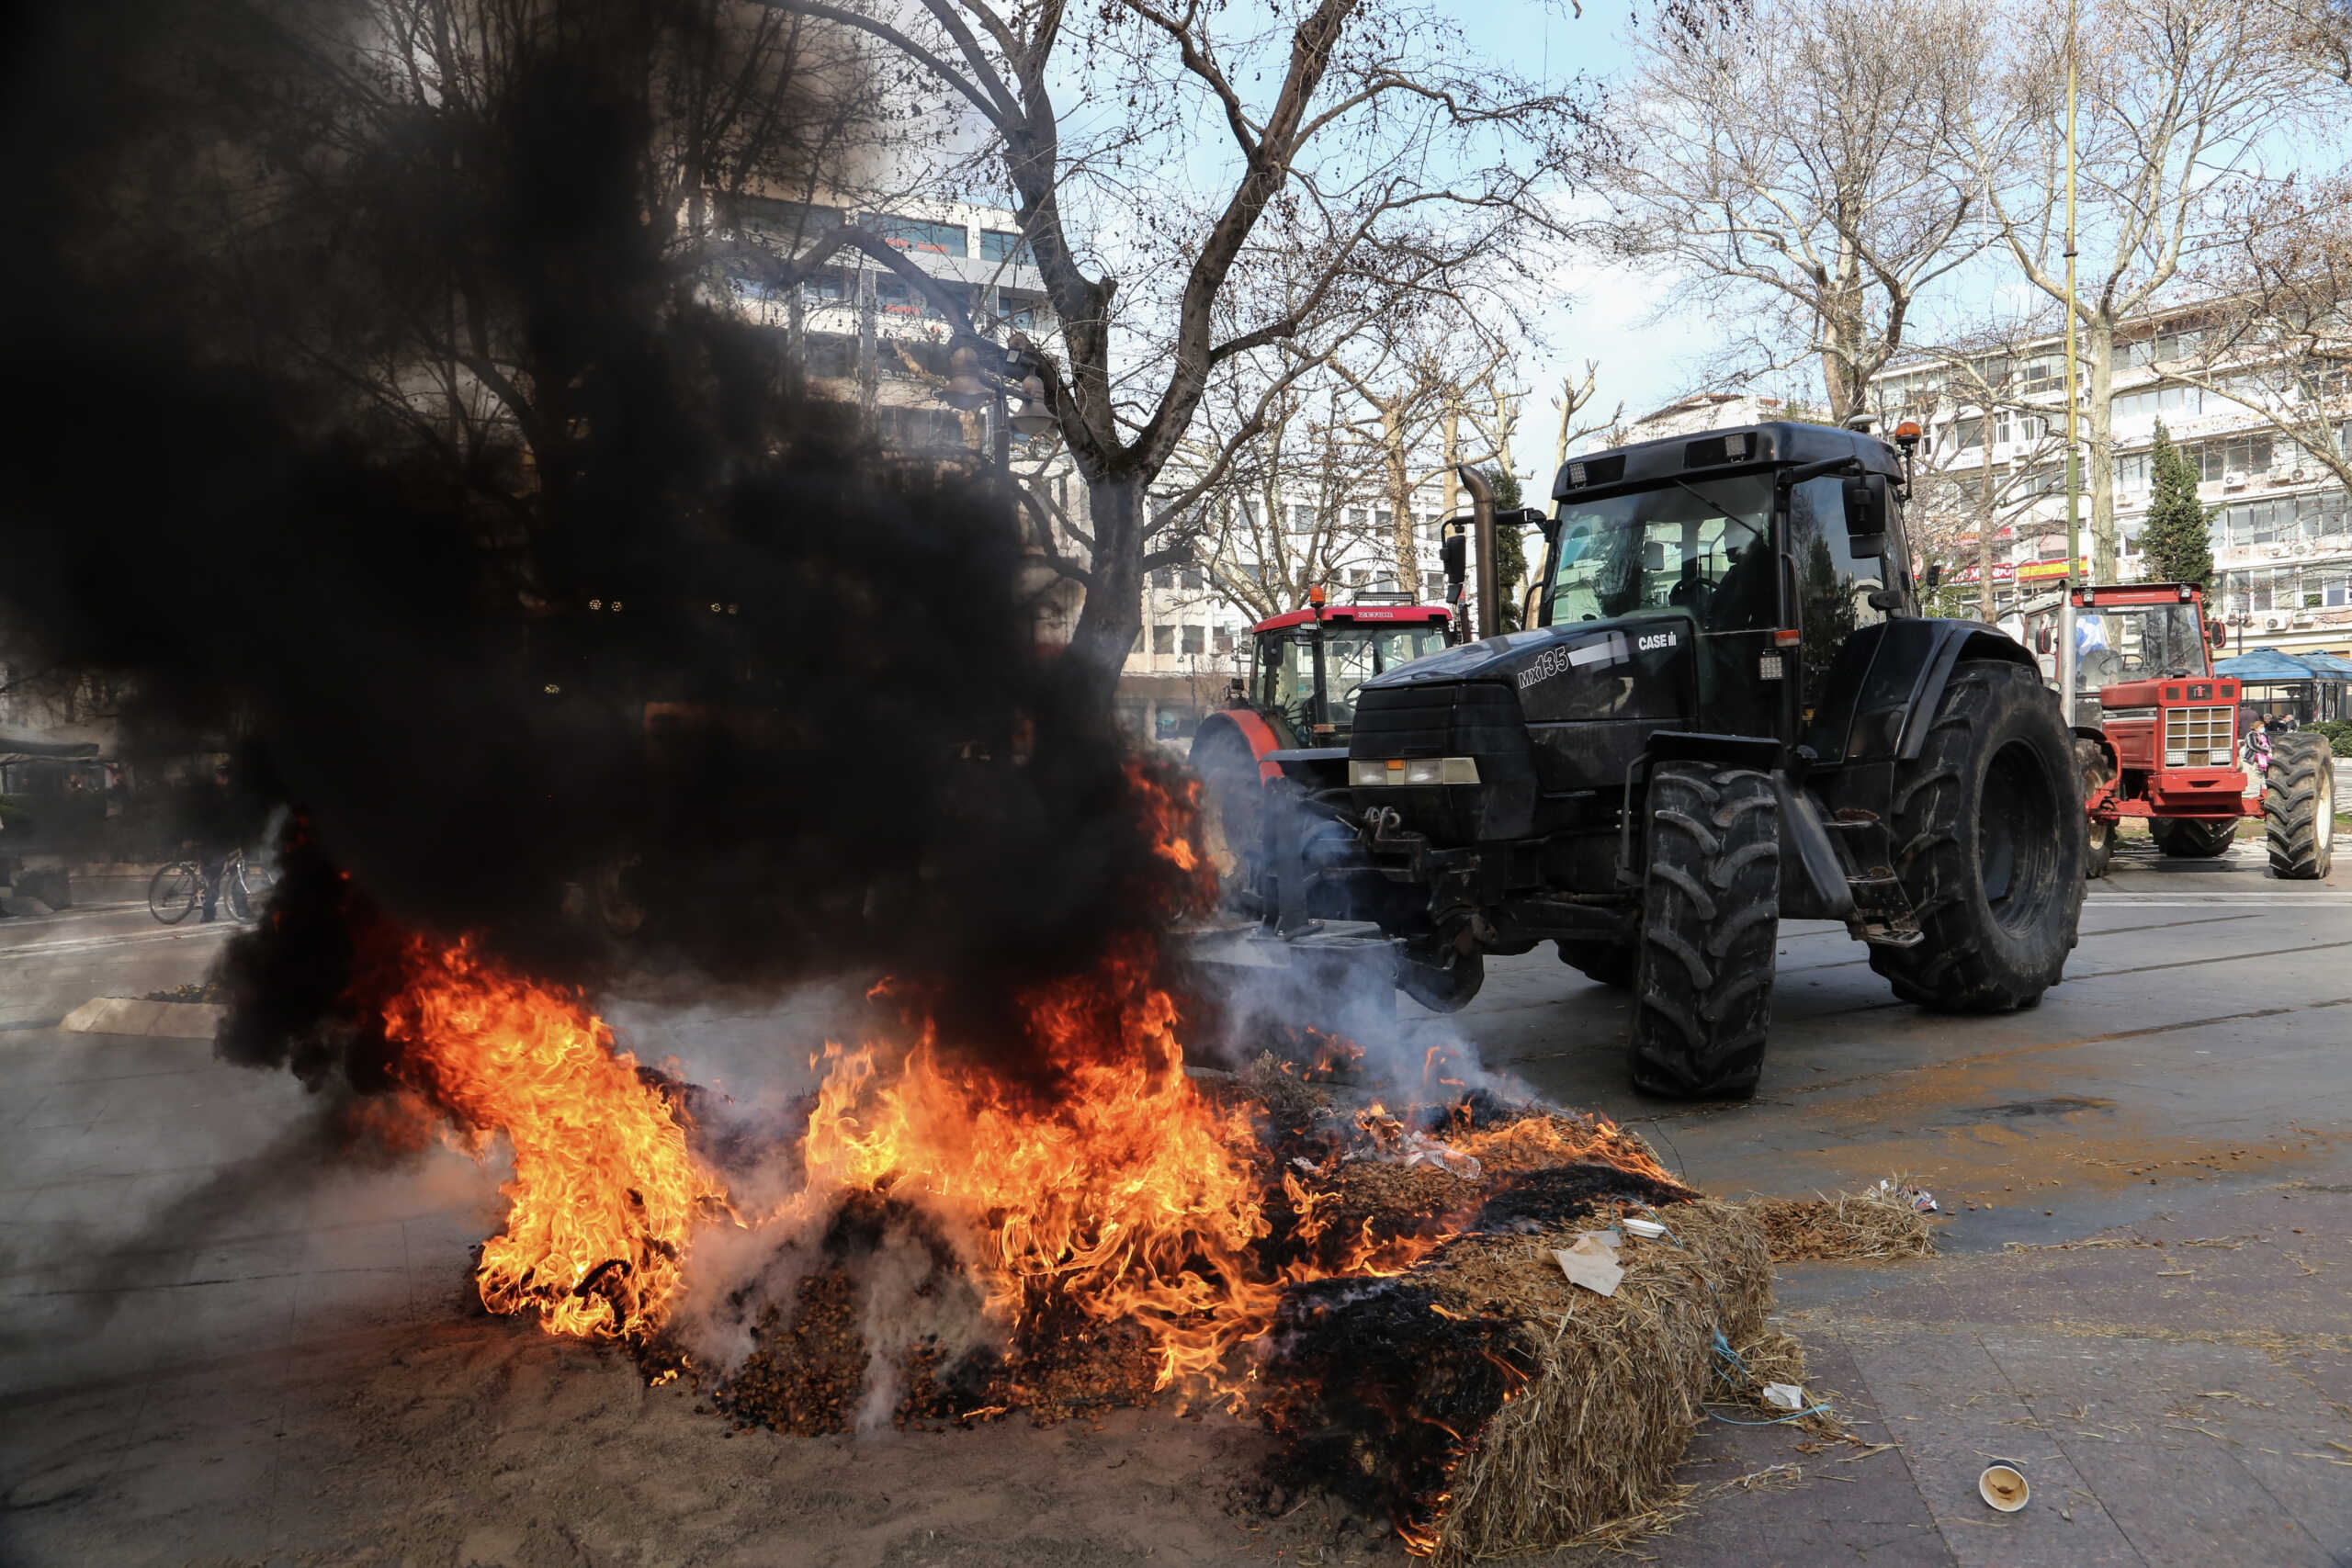 Λάρισα: Αγρότες έβαλαν φωτιά σε λάστιχα και άχυρα σε κεντρική πλατεία – Εικόνες από το σημείο